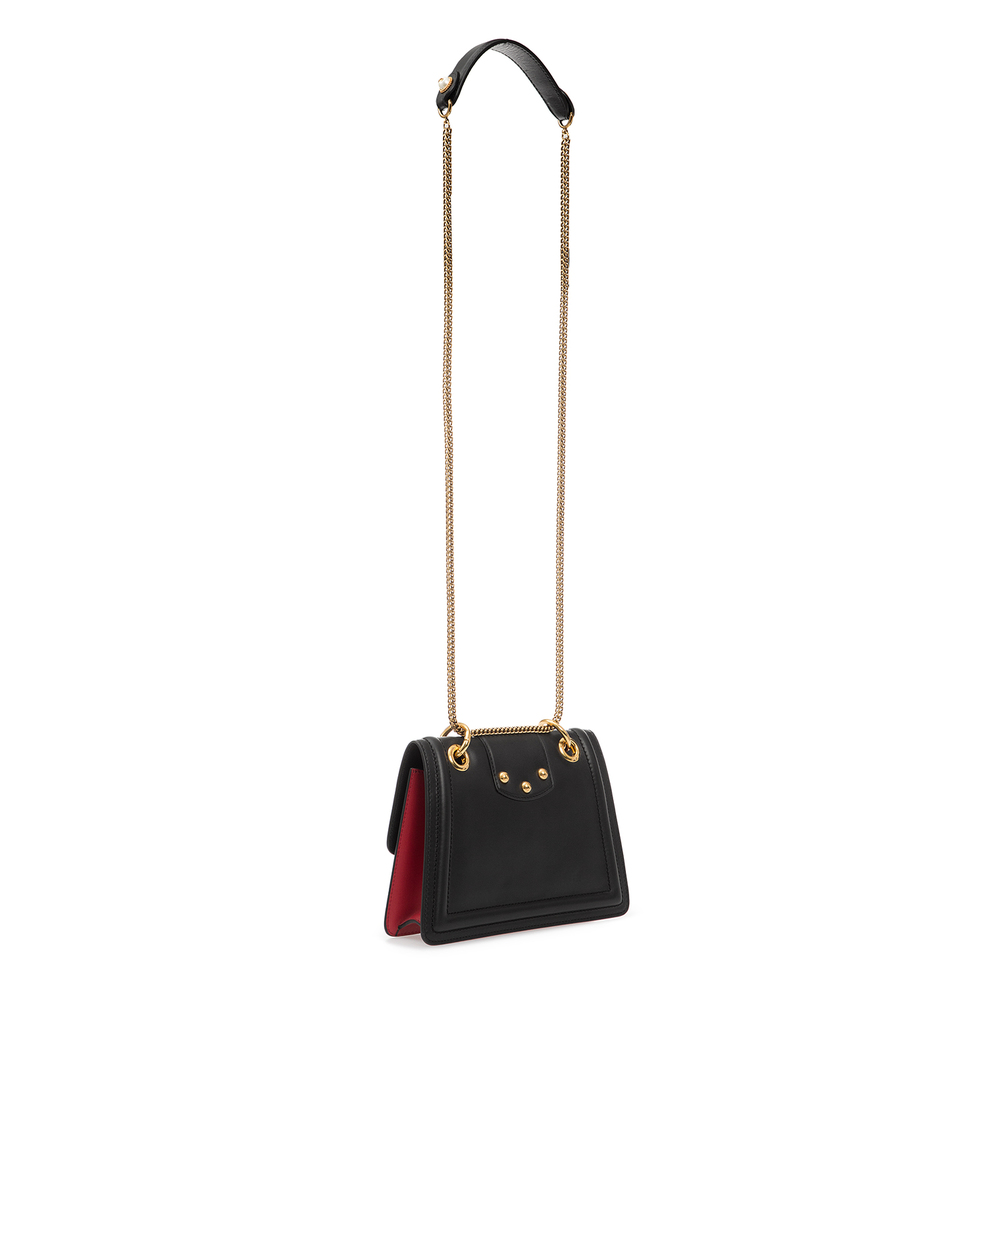 Кожаная сумка Amore Dolce&Gabbana BB6676-AK296, черный цвет • Купить в интернет-магазине Kameron